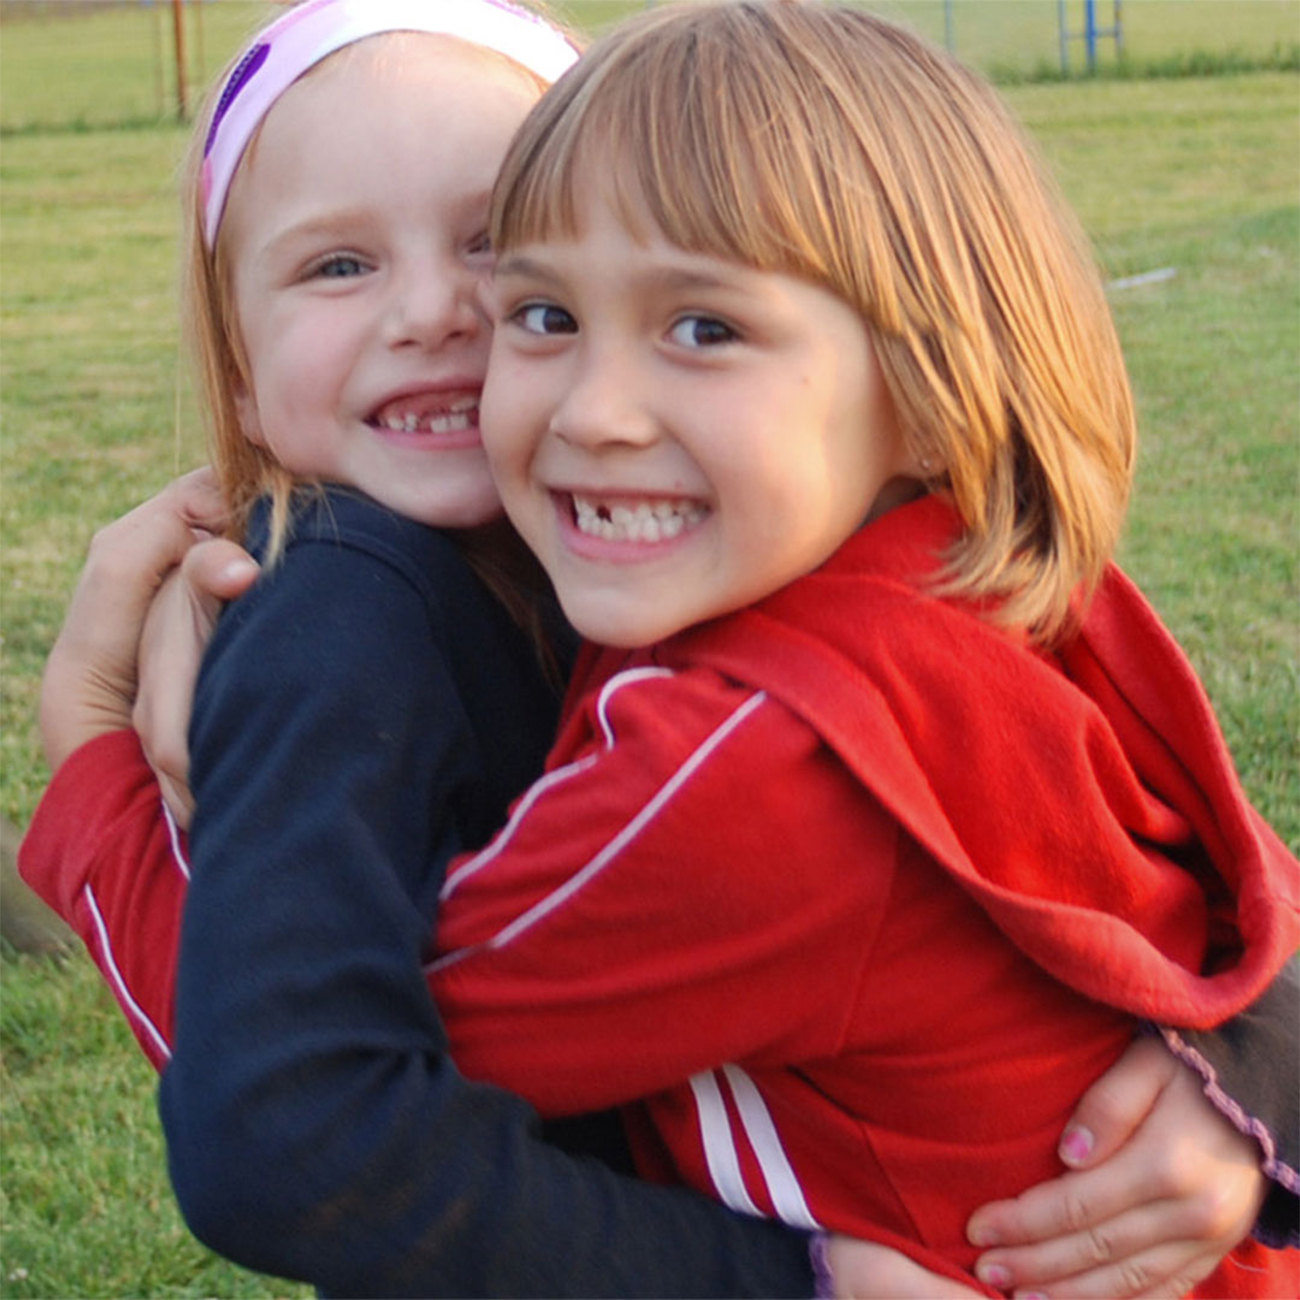 δύο παιδιά αγκαλιάζονται και χαμογελούν στη παιδική χαρά σε ένα σπίτι της Herbalife Nutrition.